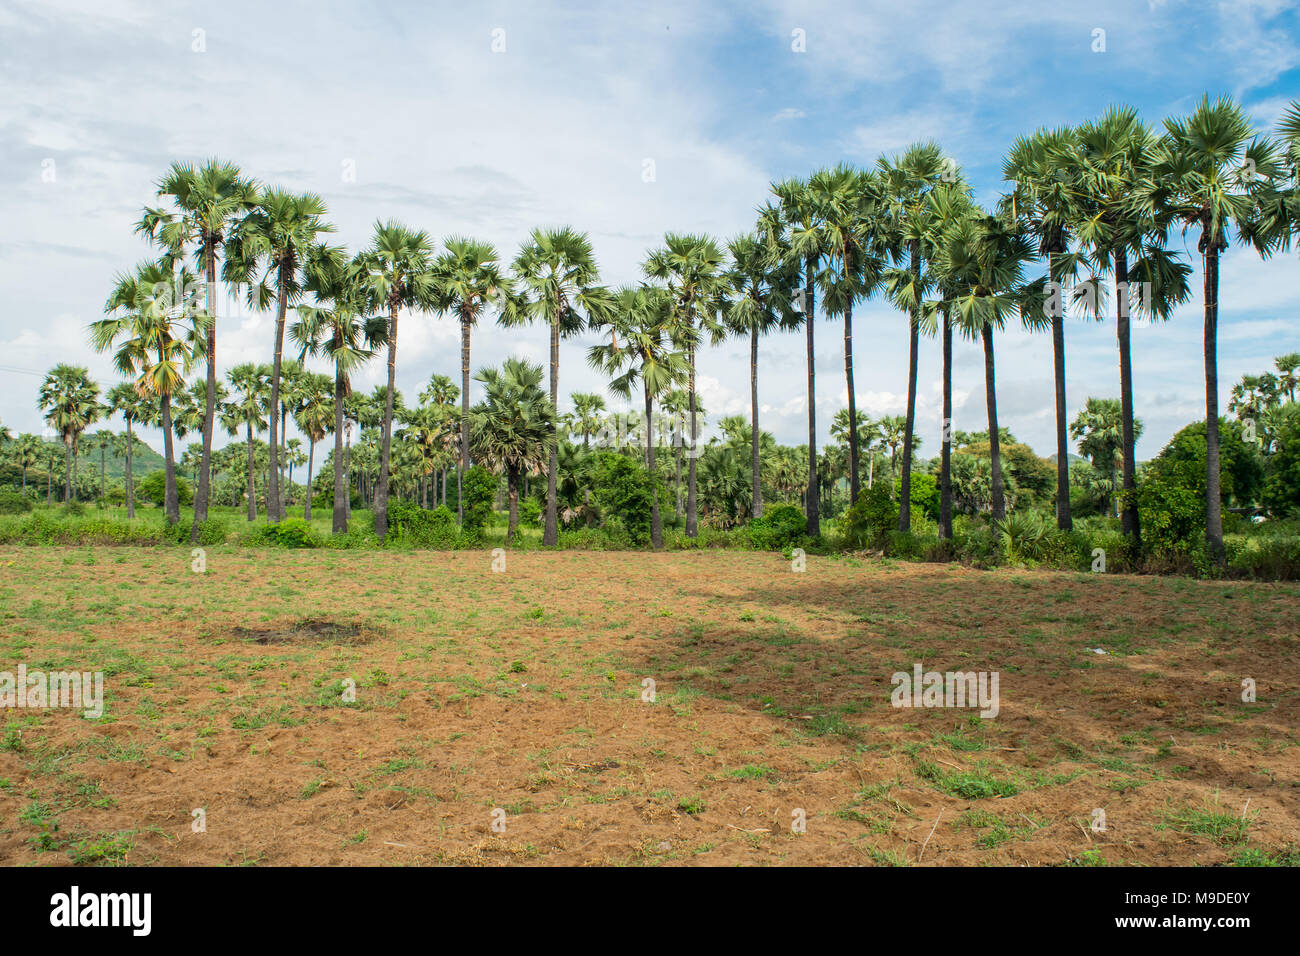 Lange Reihe von hohen Palmen am Rand der Erdnußpflanze Feld. Palmen sap und lokales Produkt palm Wein Alkohol Myanmar Burma produzieren zu sammeln Stockfoto